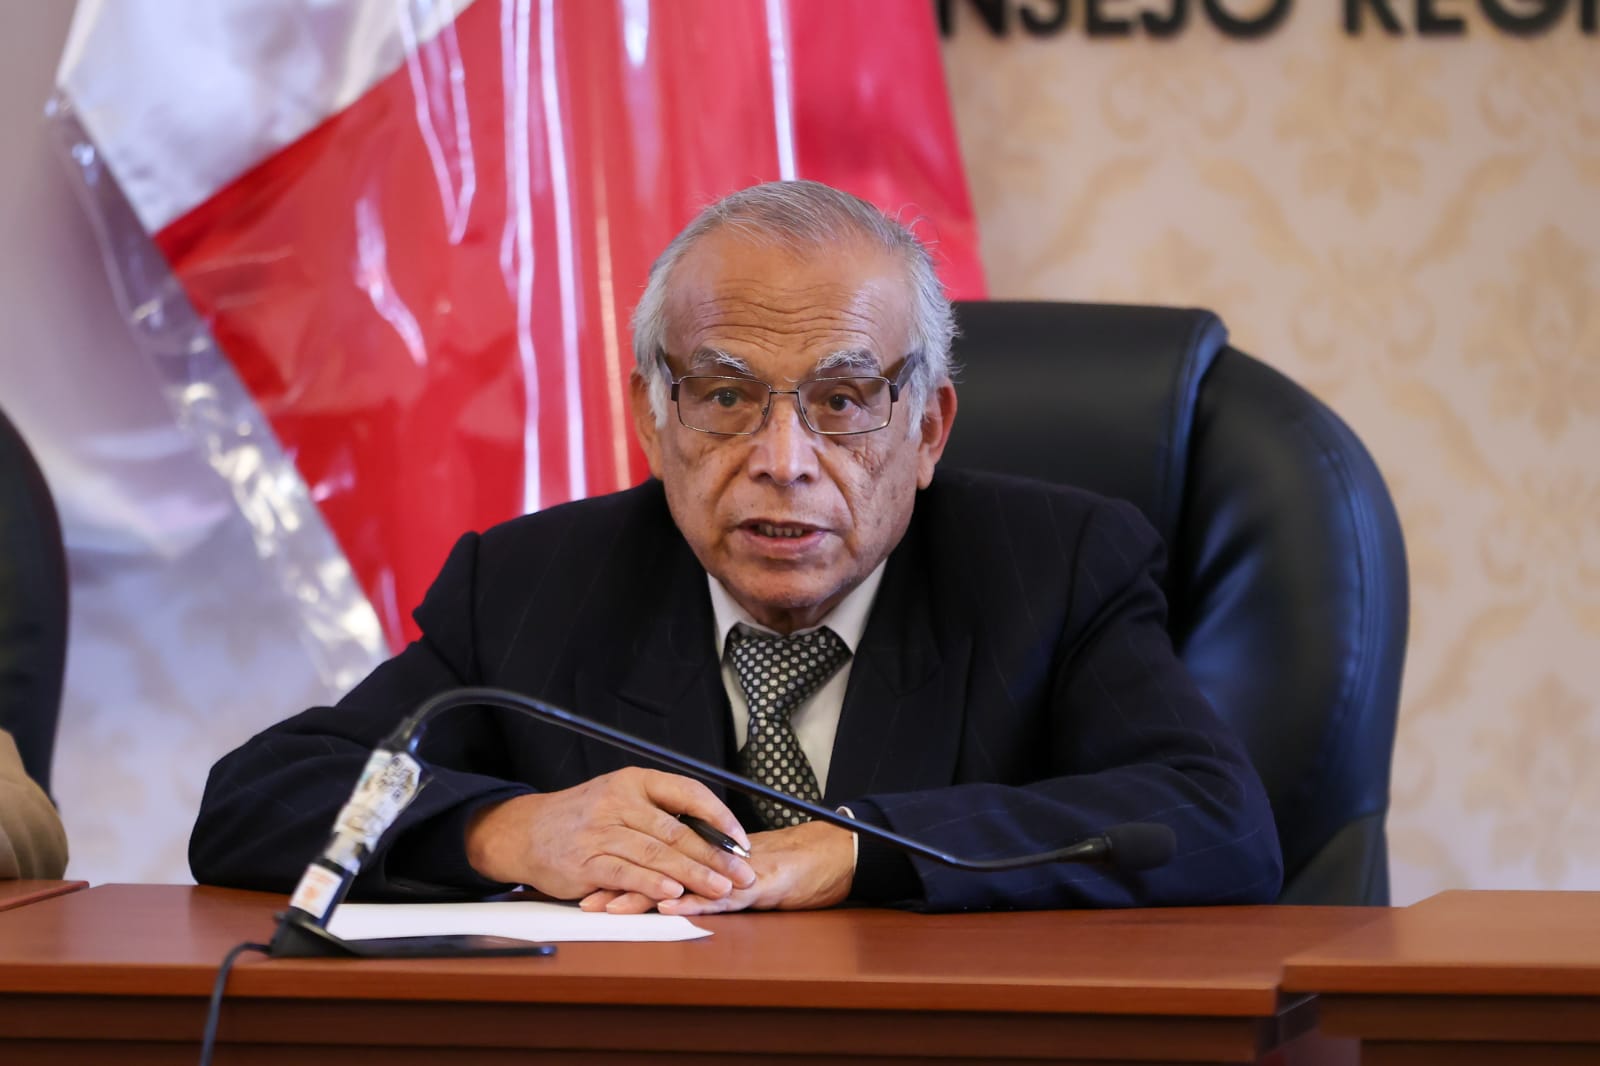 El premier peruano señaló que en los interrogatorios a testigos la fiscalía busca crear un delito y no ser fieles a la verdad